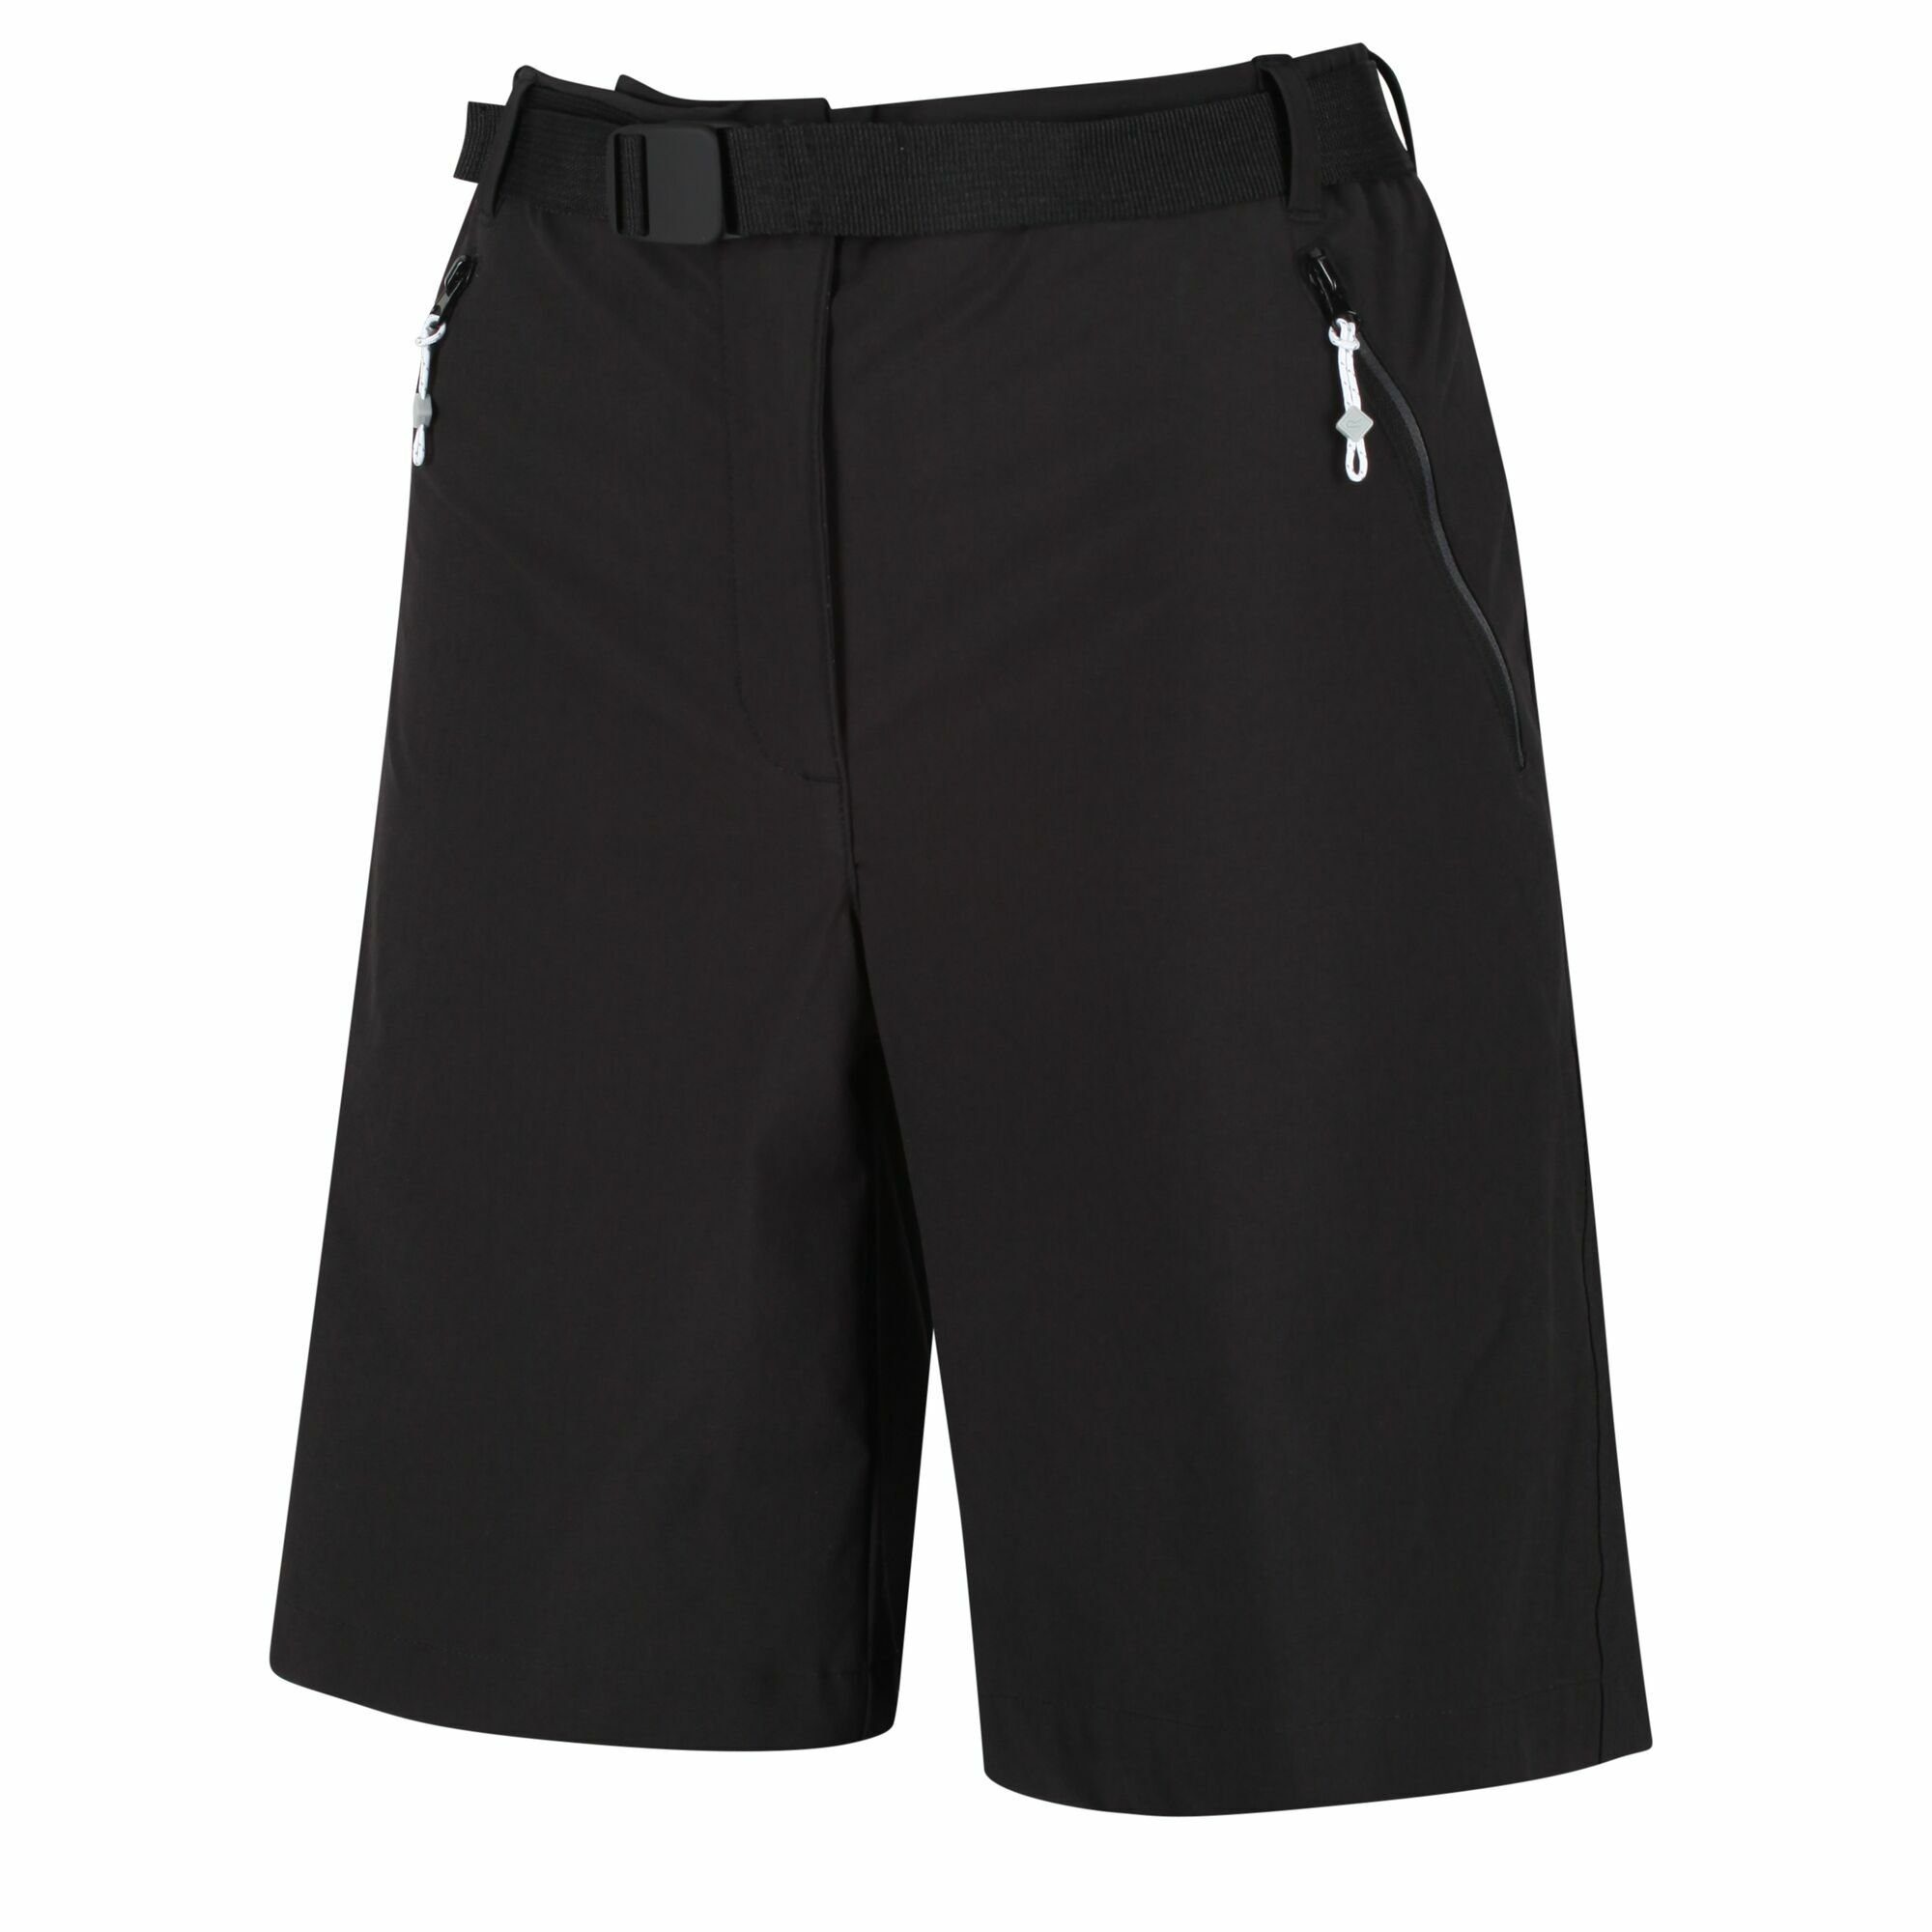 Outdoorhose Black Shorts wasserabweisend Xert III Regatta Stretch